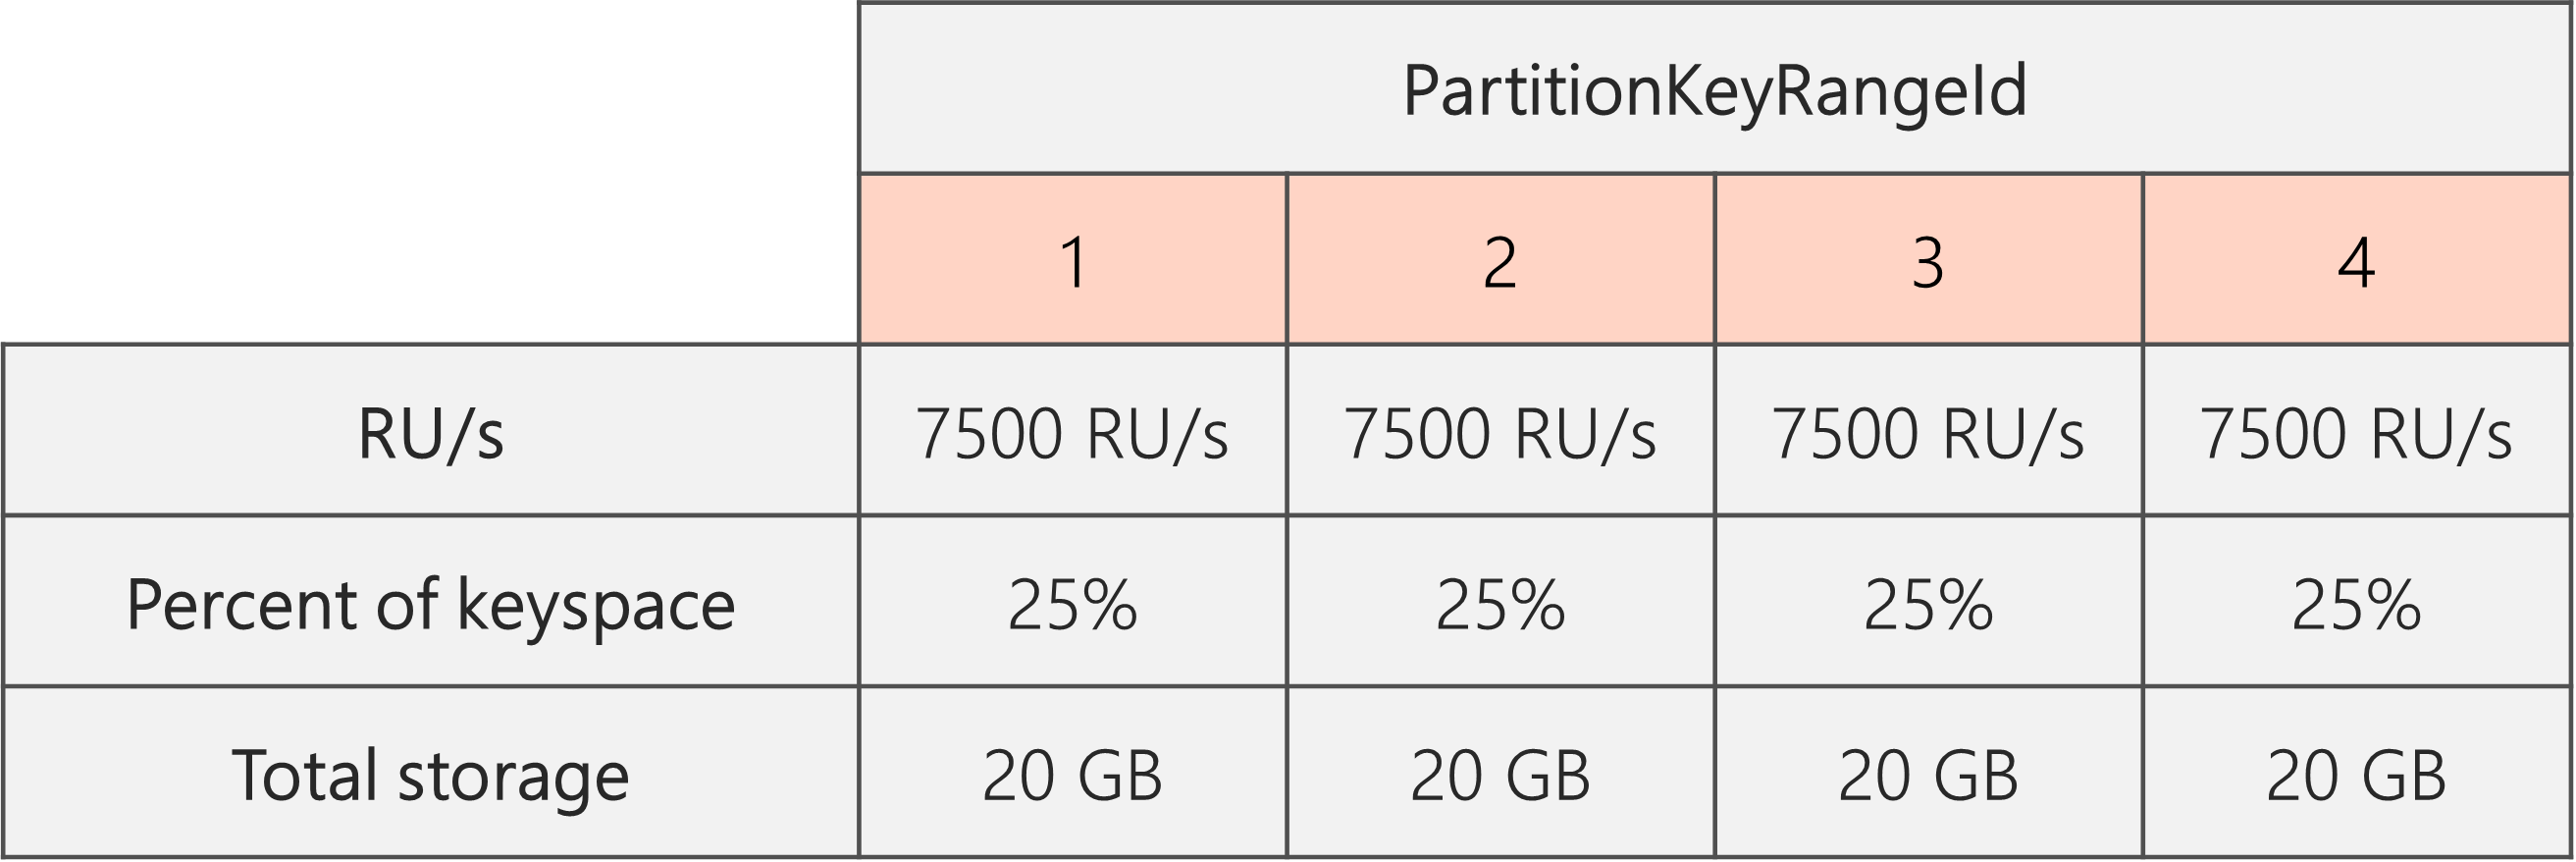 När delningen har slutförts och RU/s har sänkts från 40 000 RU/s till 30 000 RU/s finns det 4 PartitionKeyRangeIds, var och en med 7 500 RU/s och 25 % av det totala nyckelområdet (20 GB)